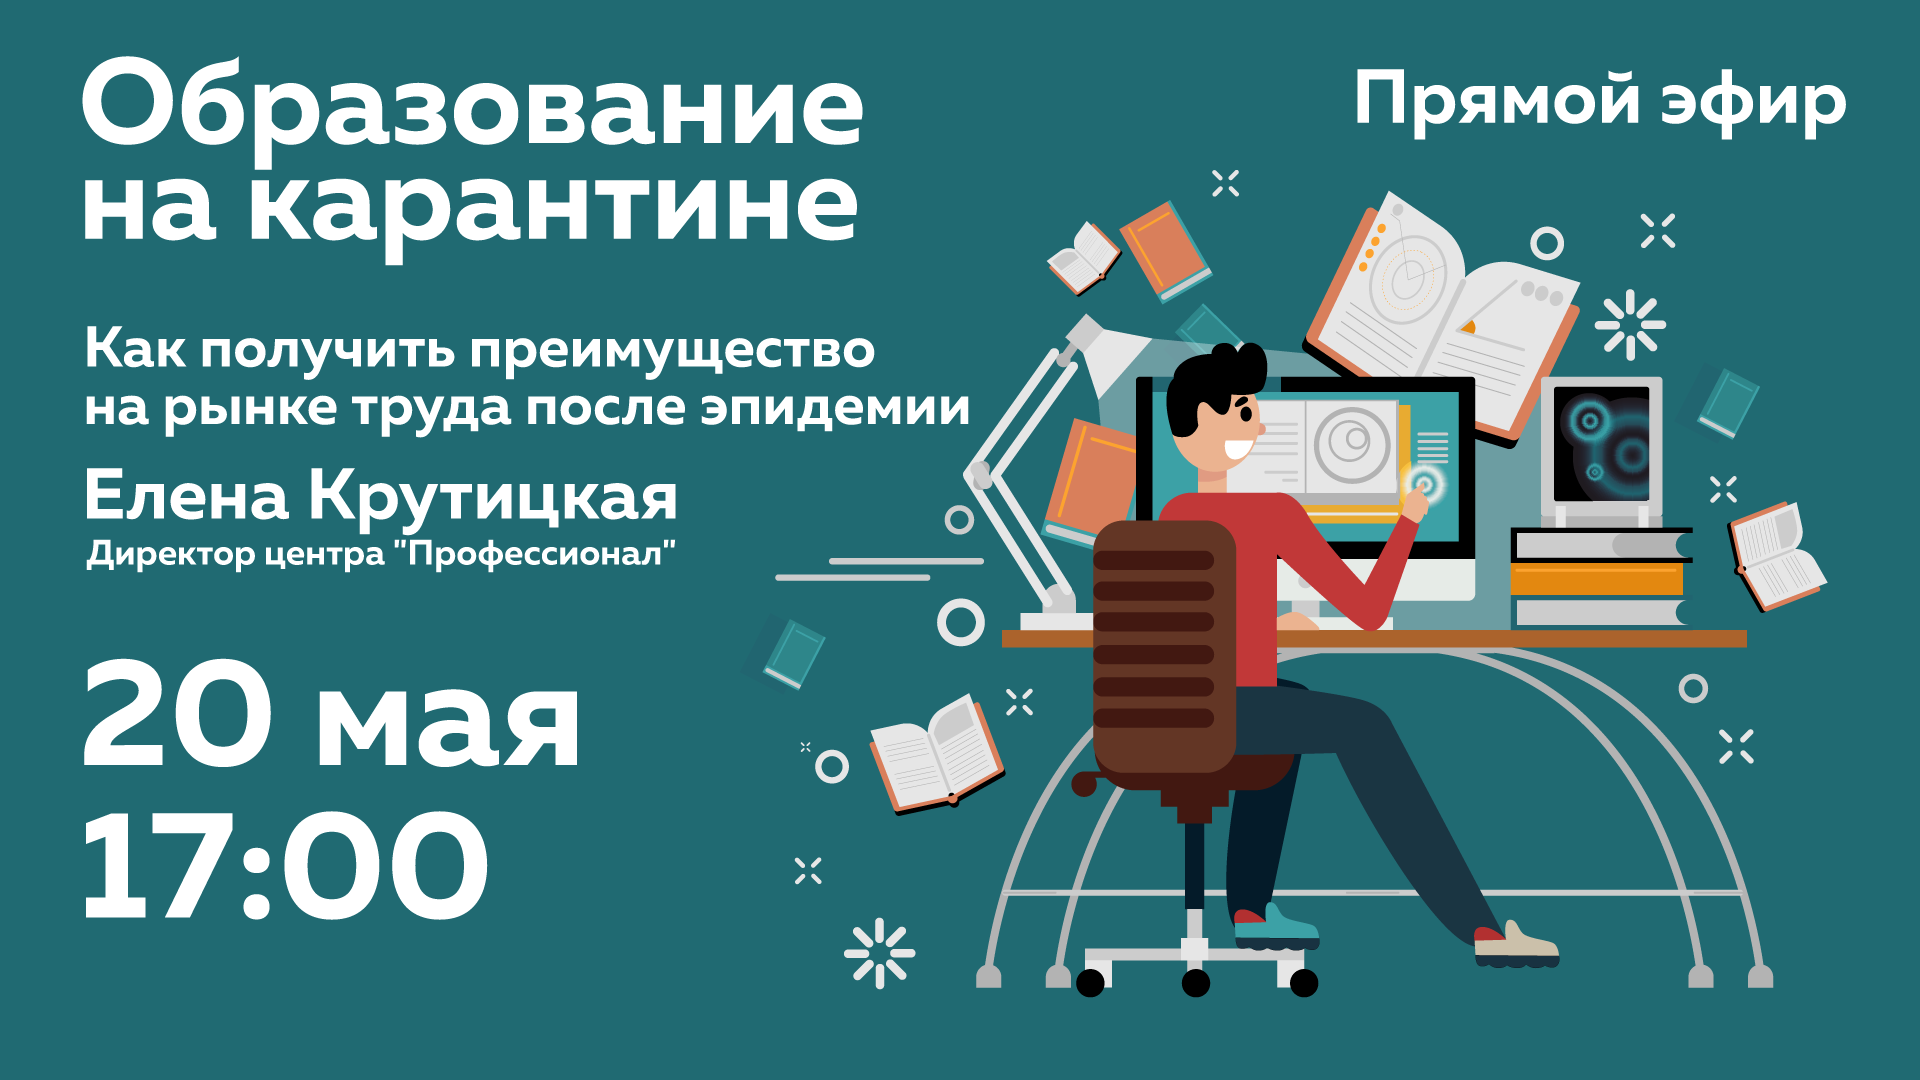 20 мая в 17:00 на портале «Я дома» пройдет прямой эфир с директором центра «Профессионал» о возможностях бесплатного профессионального онлайн-образования в Москве